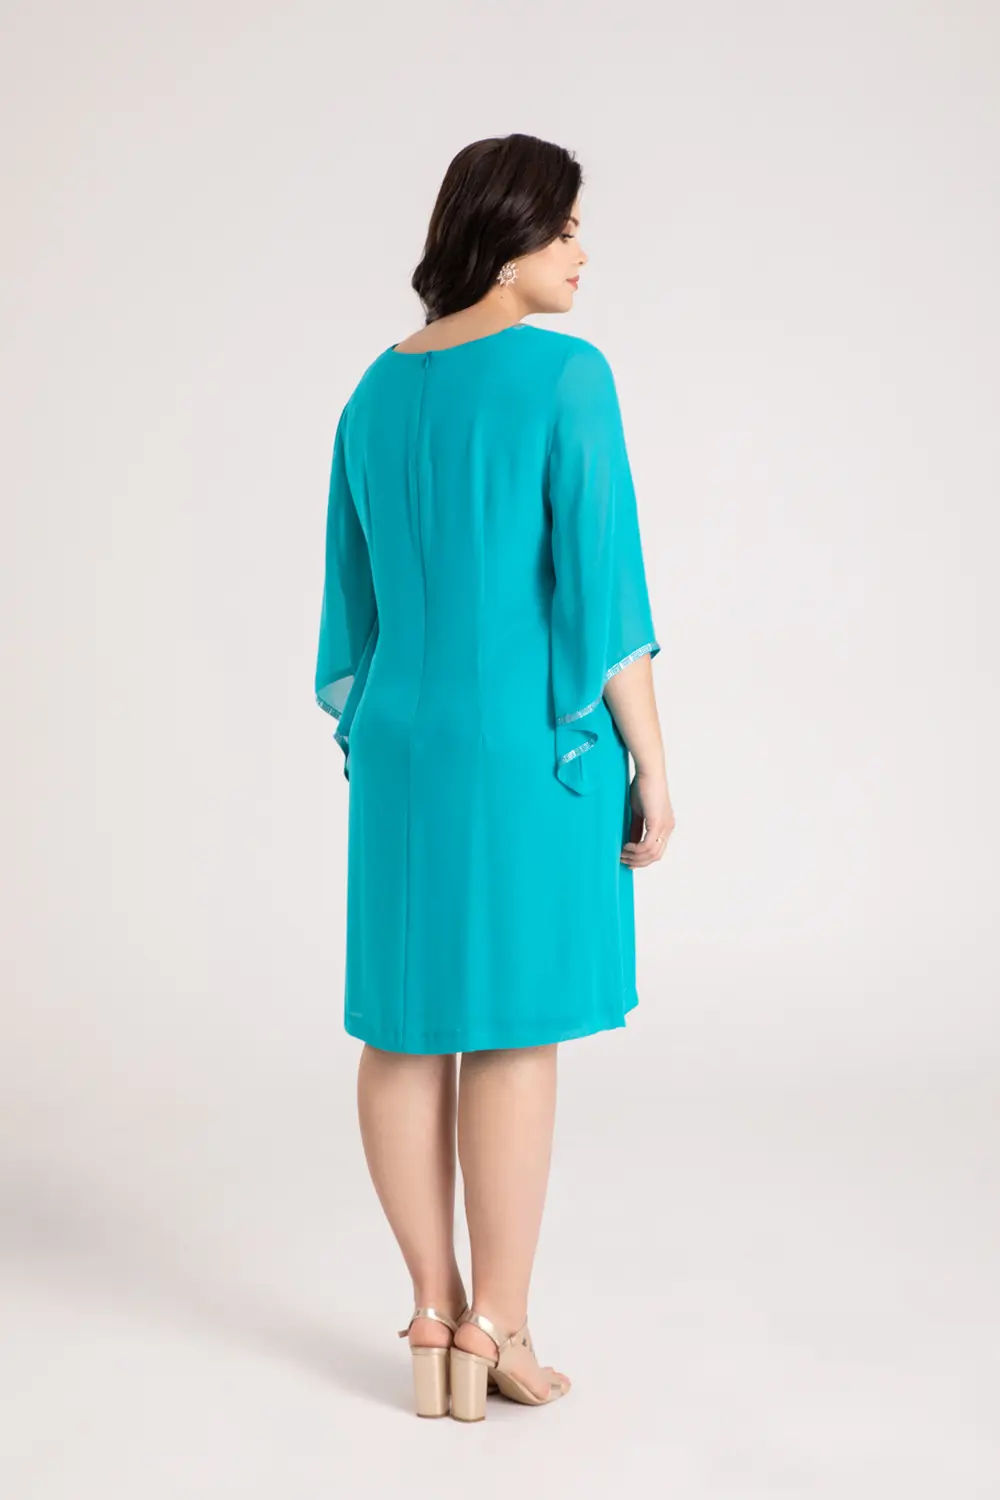 wizytowa sukienka szyfonowa zielona plus size duże rozmiary marki Vito Vergelis